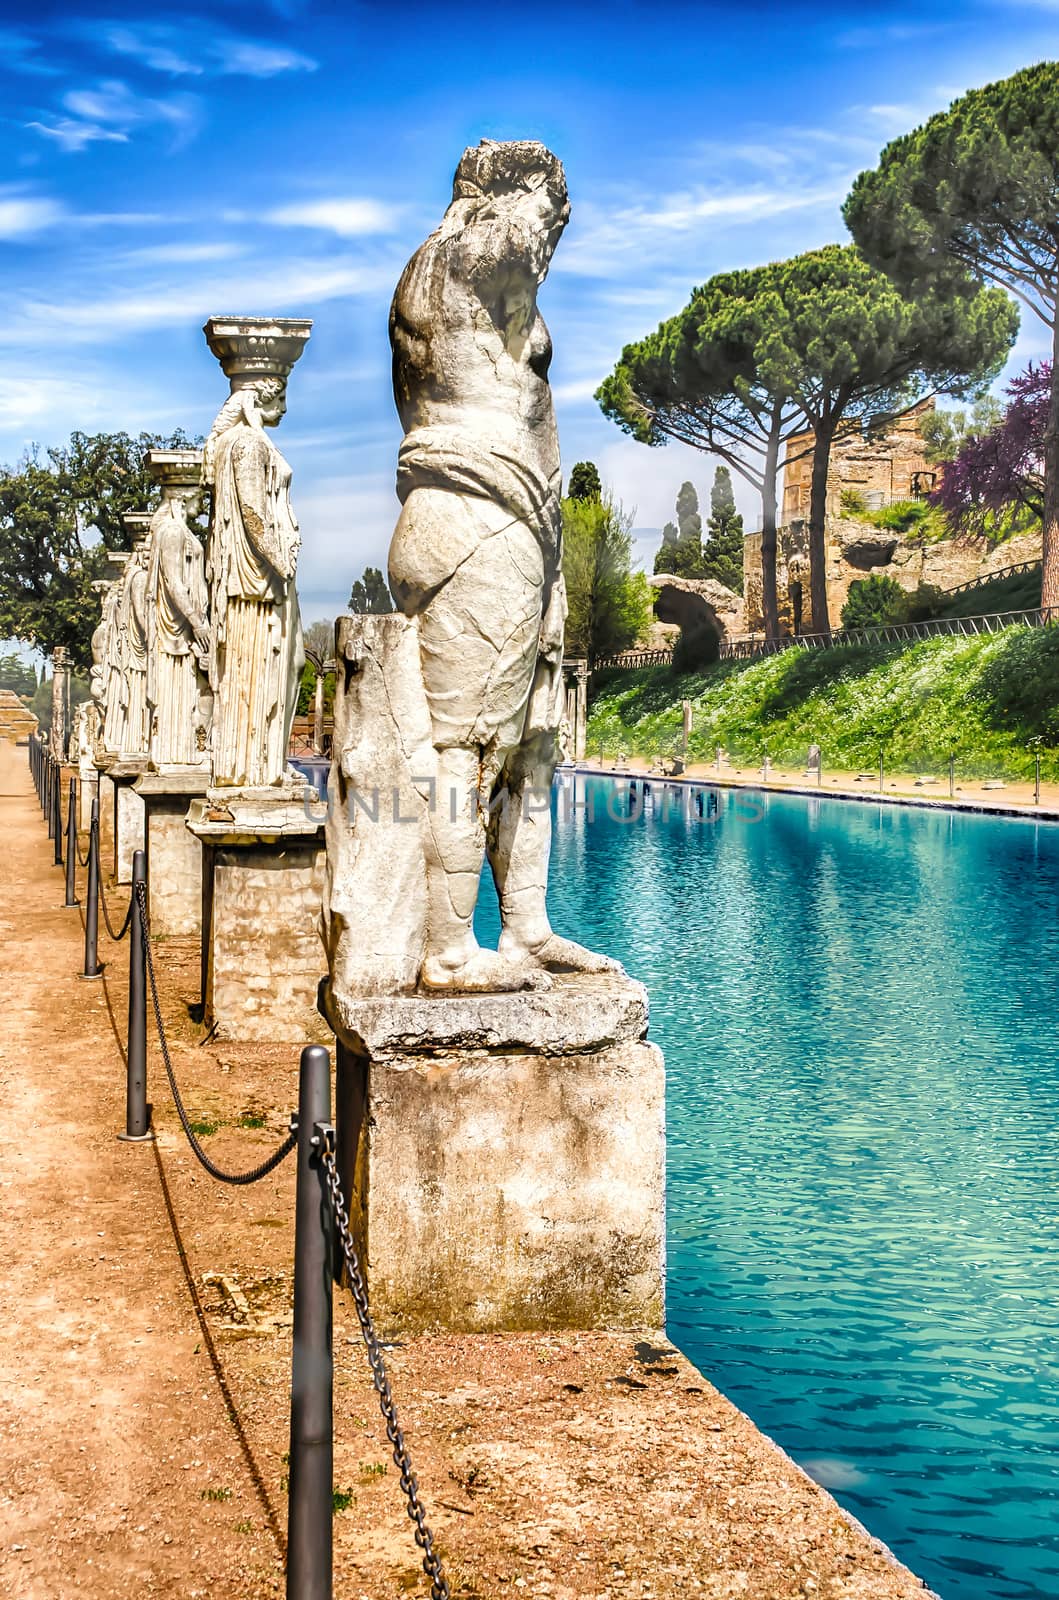 Statues of the Caryatides at Villa Adriana, Tivoli, Italy by marcorubino